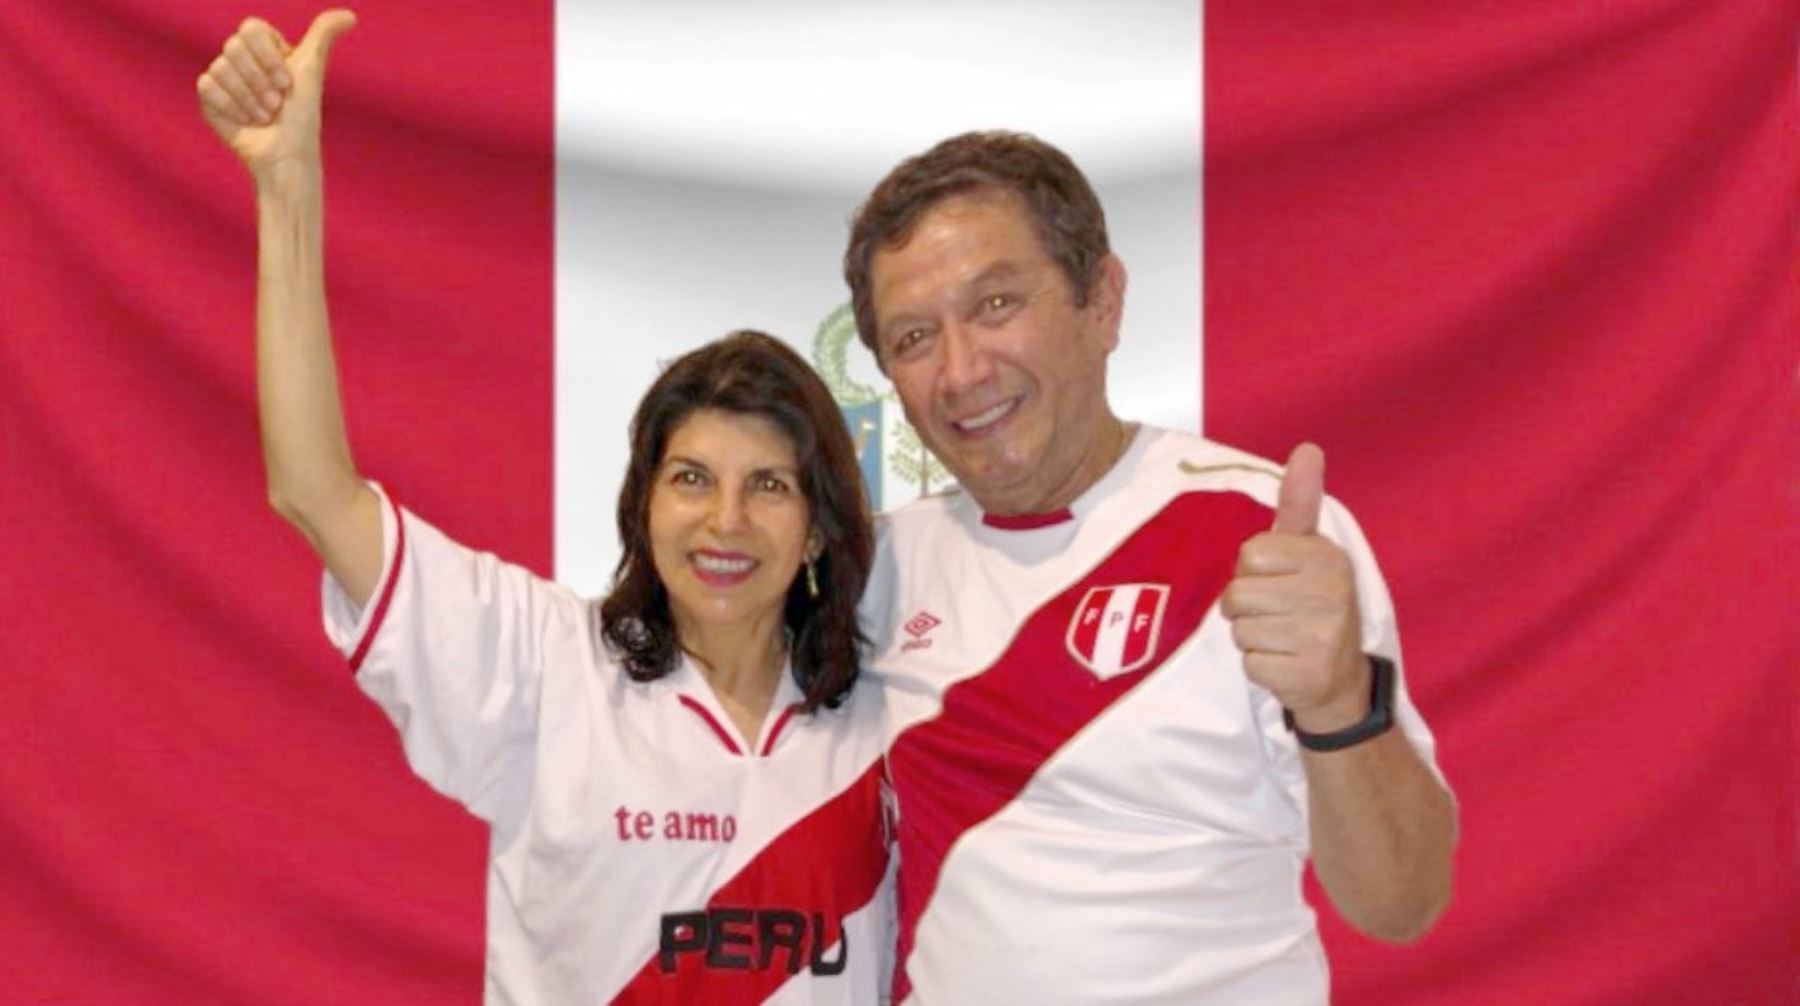 La Cancillería y la Comunidad Peruana en Paraguay brindan su apoyo a la selección nacional